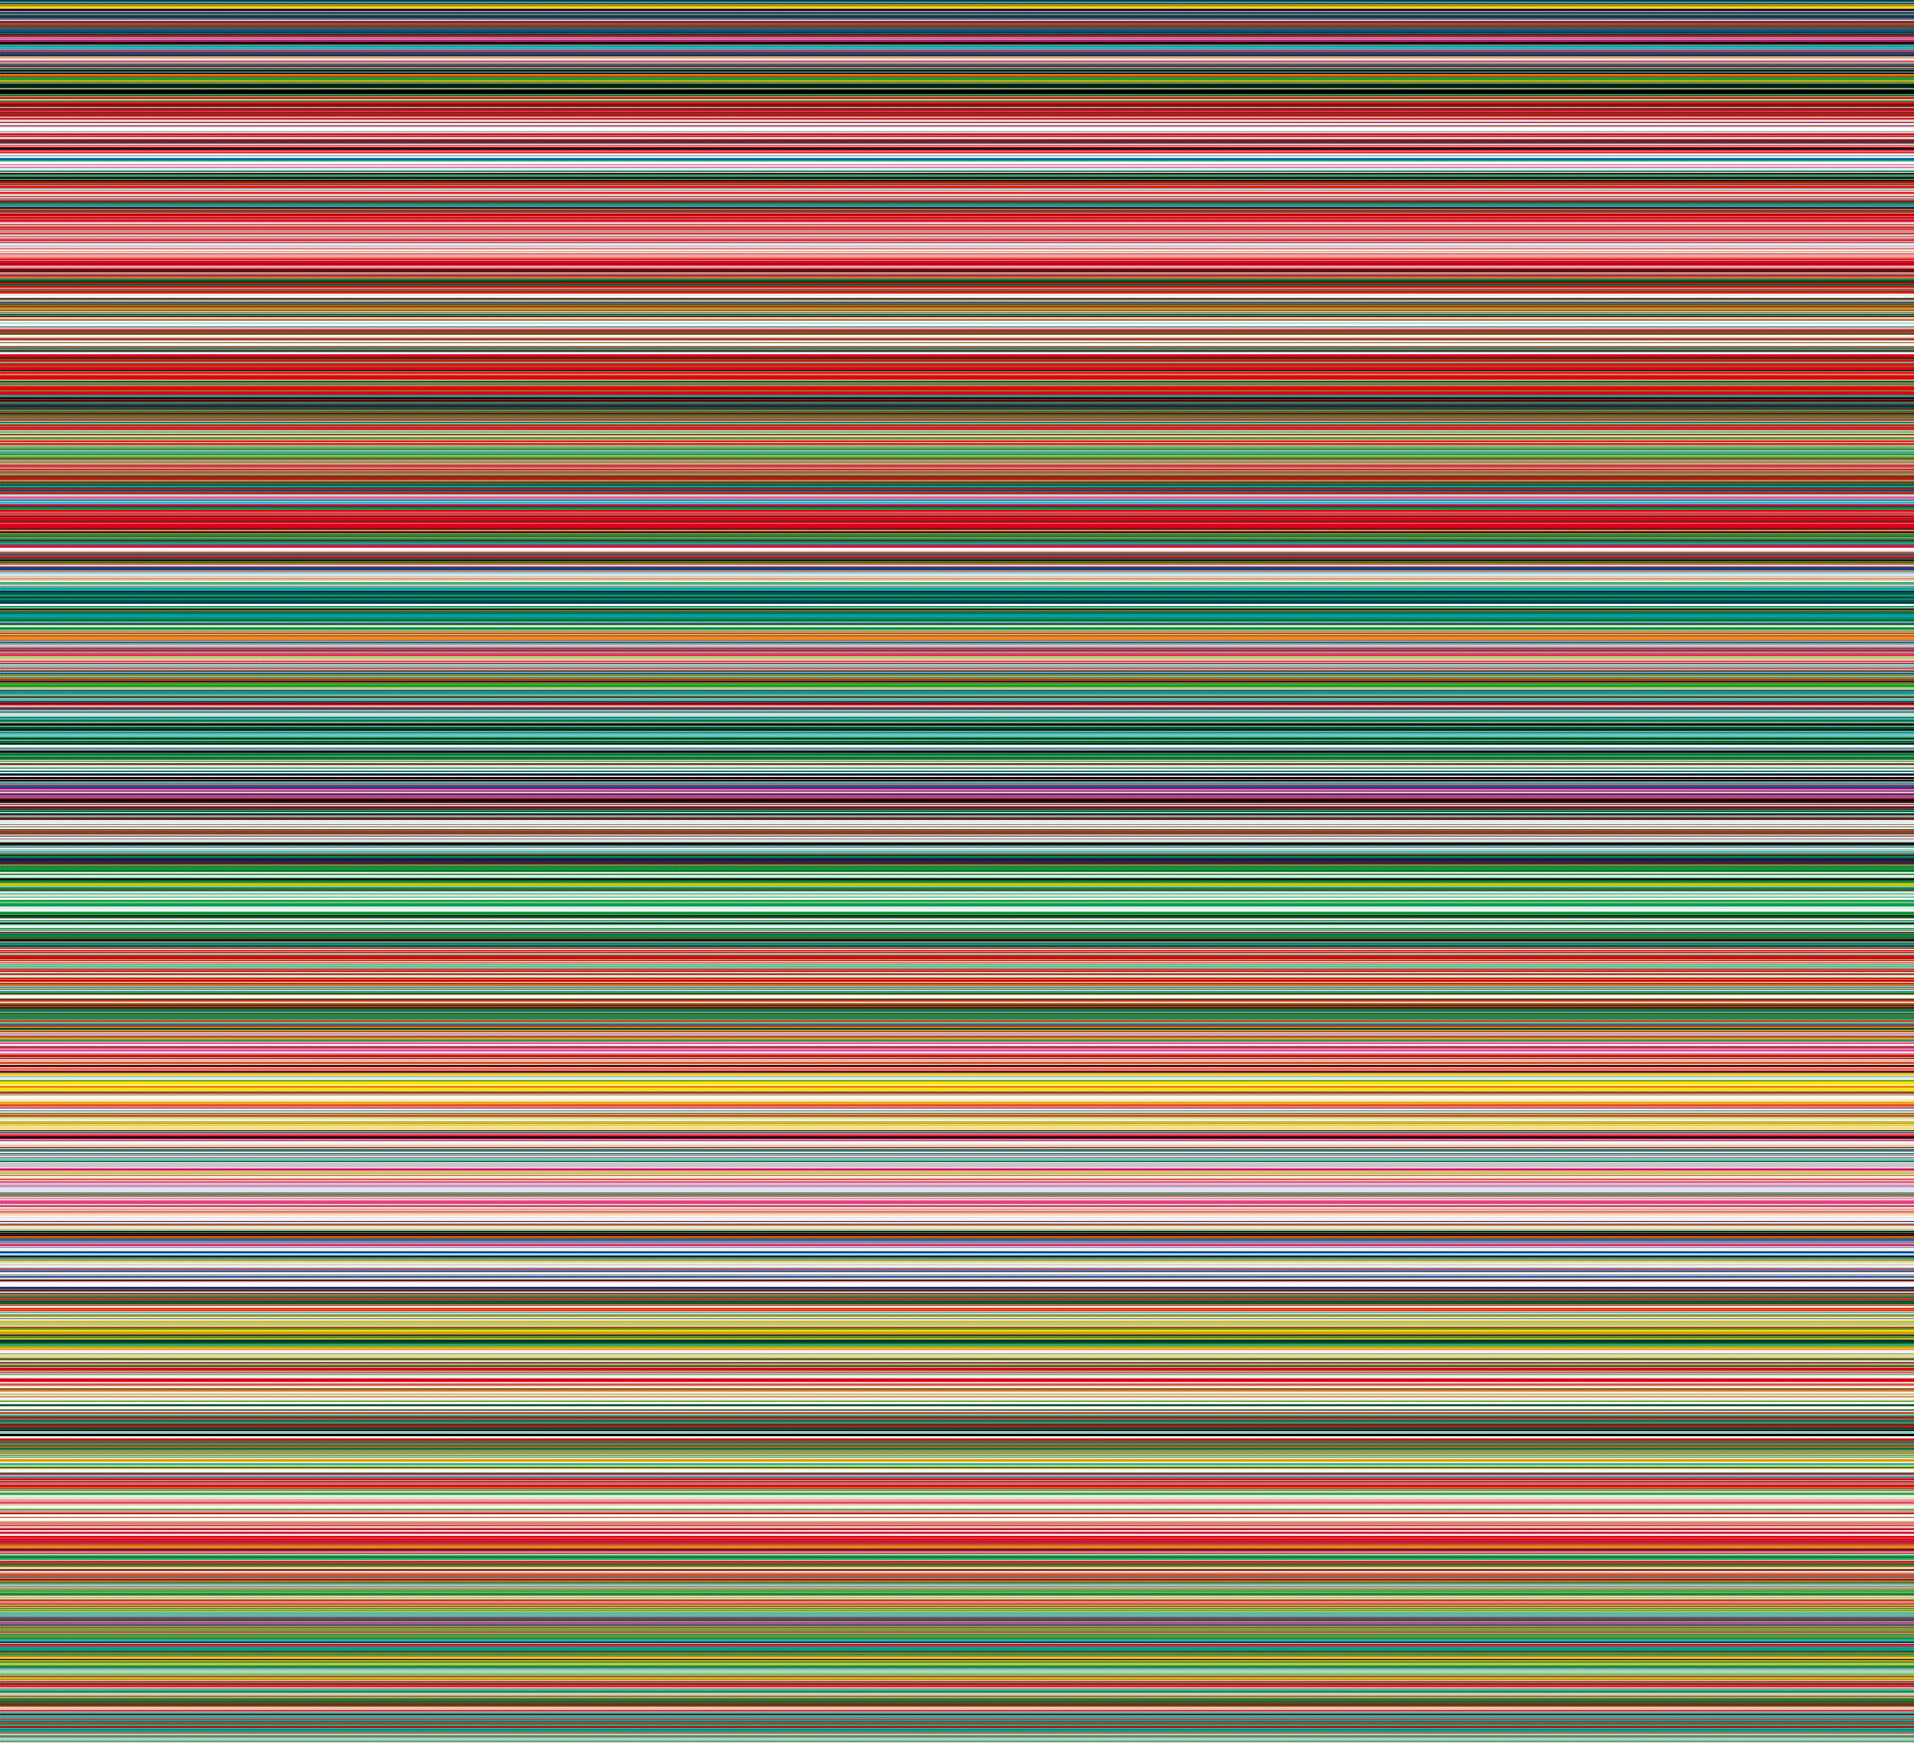 STRIP (927-9) by Gerhard Richter - 2012年 - 210 x 230 cm 